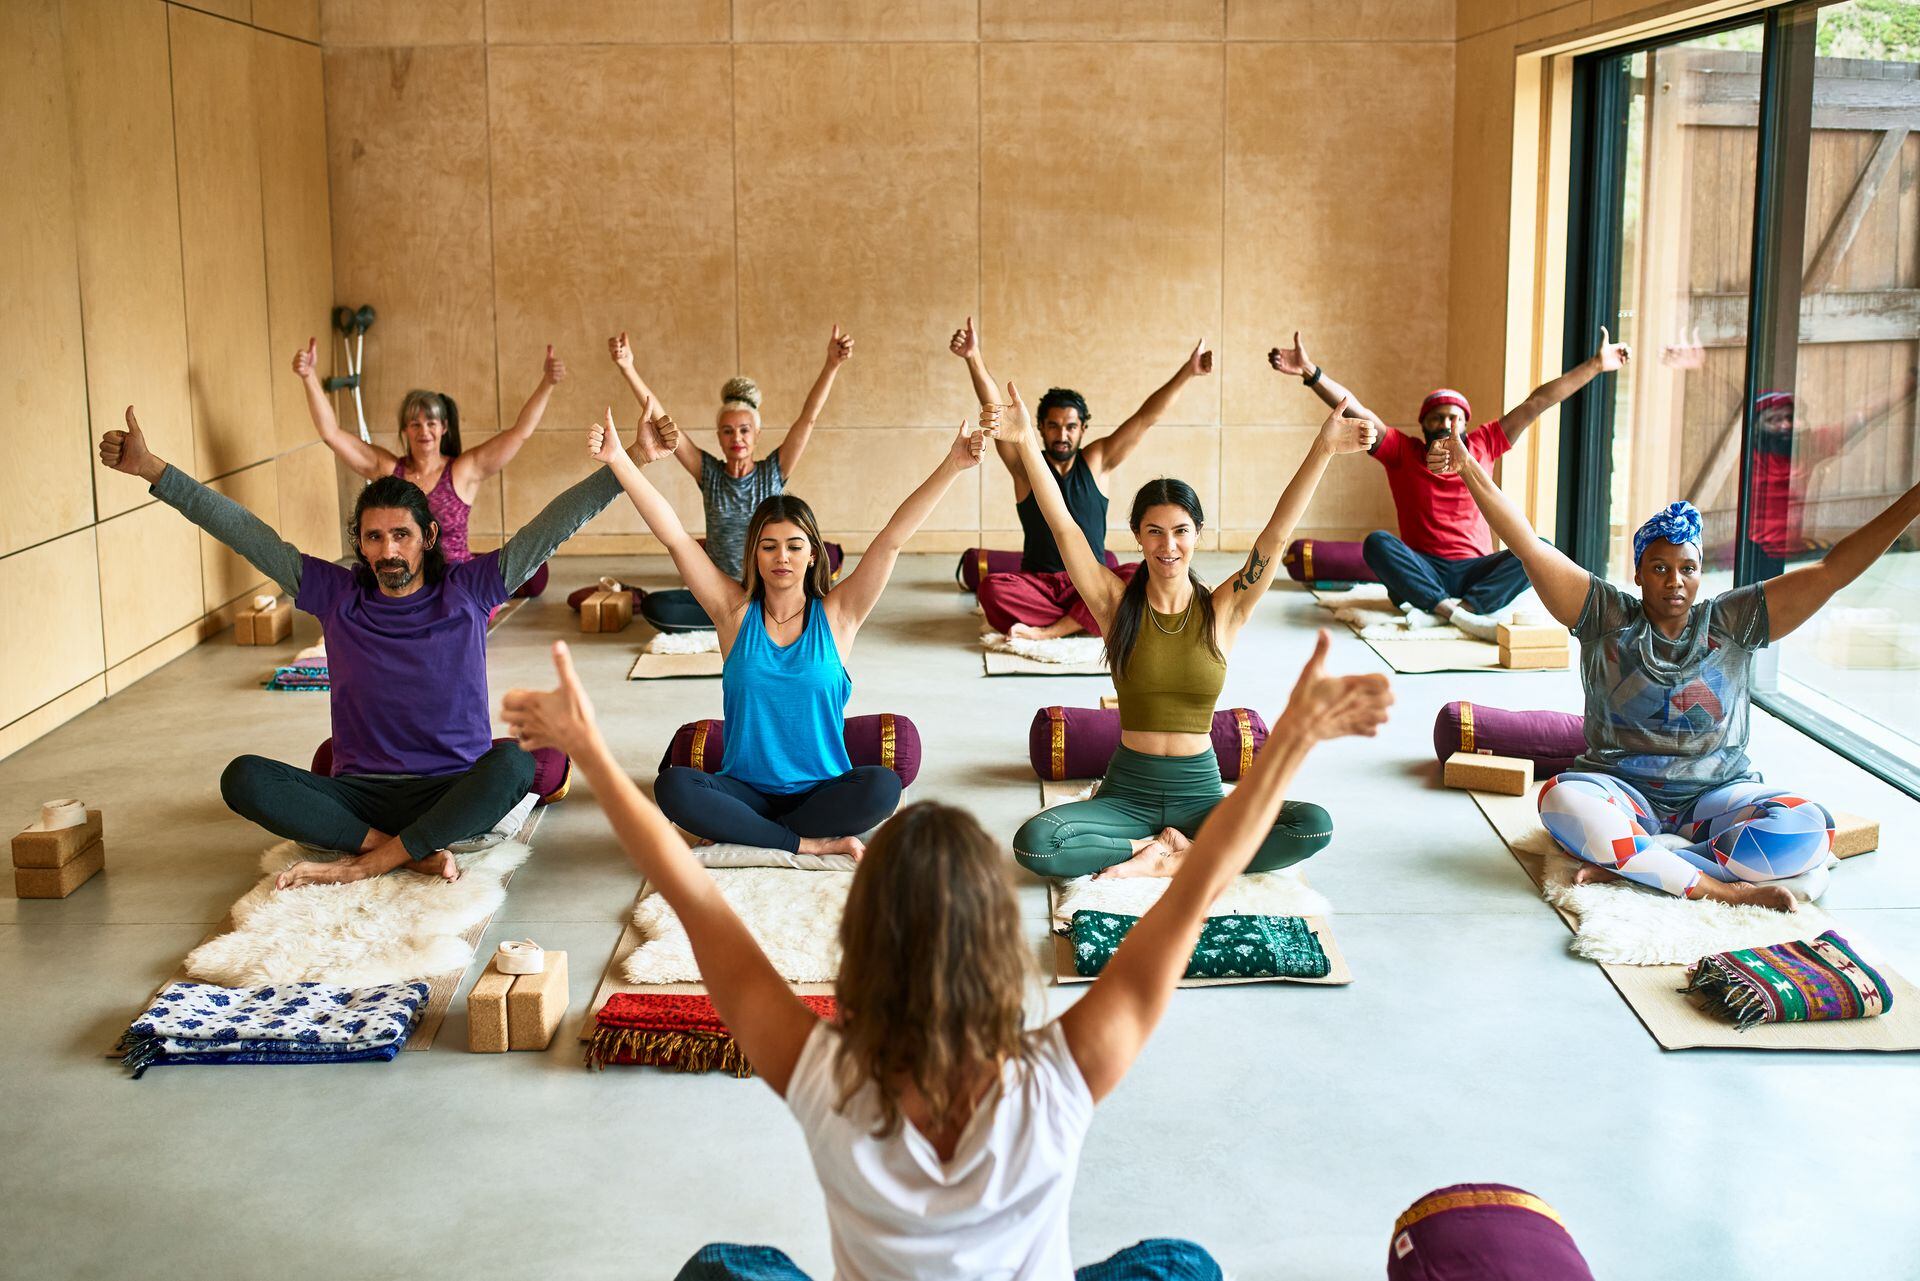 Posturas básicas de yoga y sus beneficios